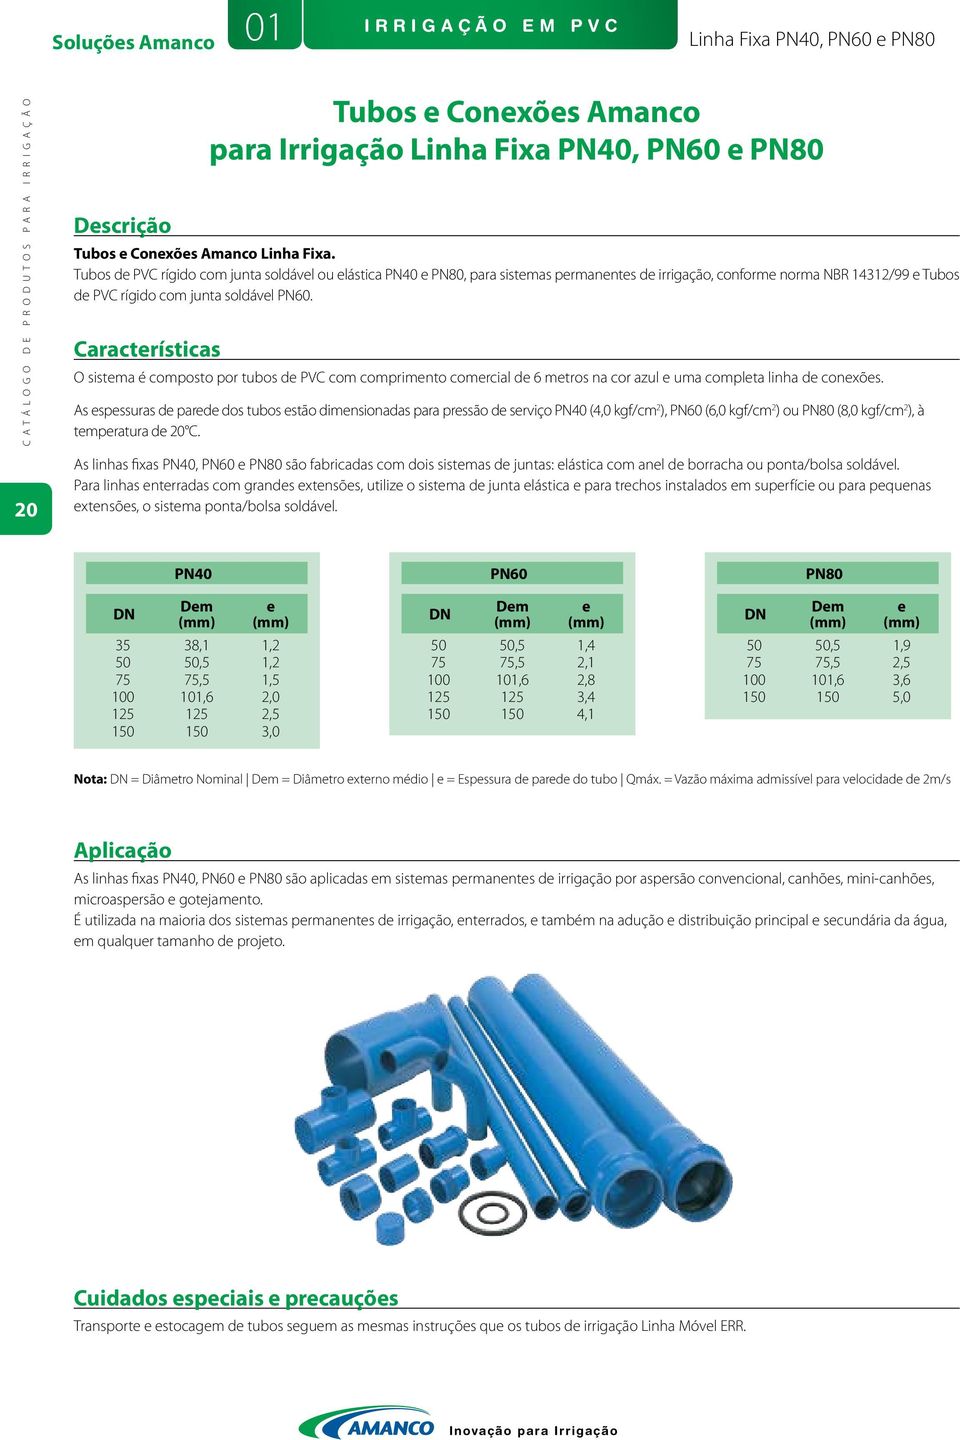 Características Tubos e Conexões Amanco para Irrigação Linha Fixa PN40, PN60 e PN80 O sistema é composto por tubos de PVC com comprimento comercial de 6 metros na cor azul e uma completa linha de